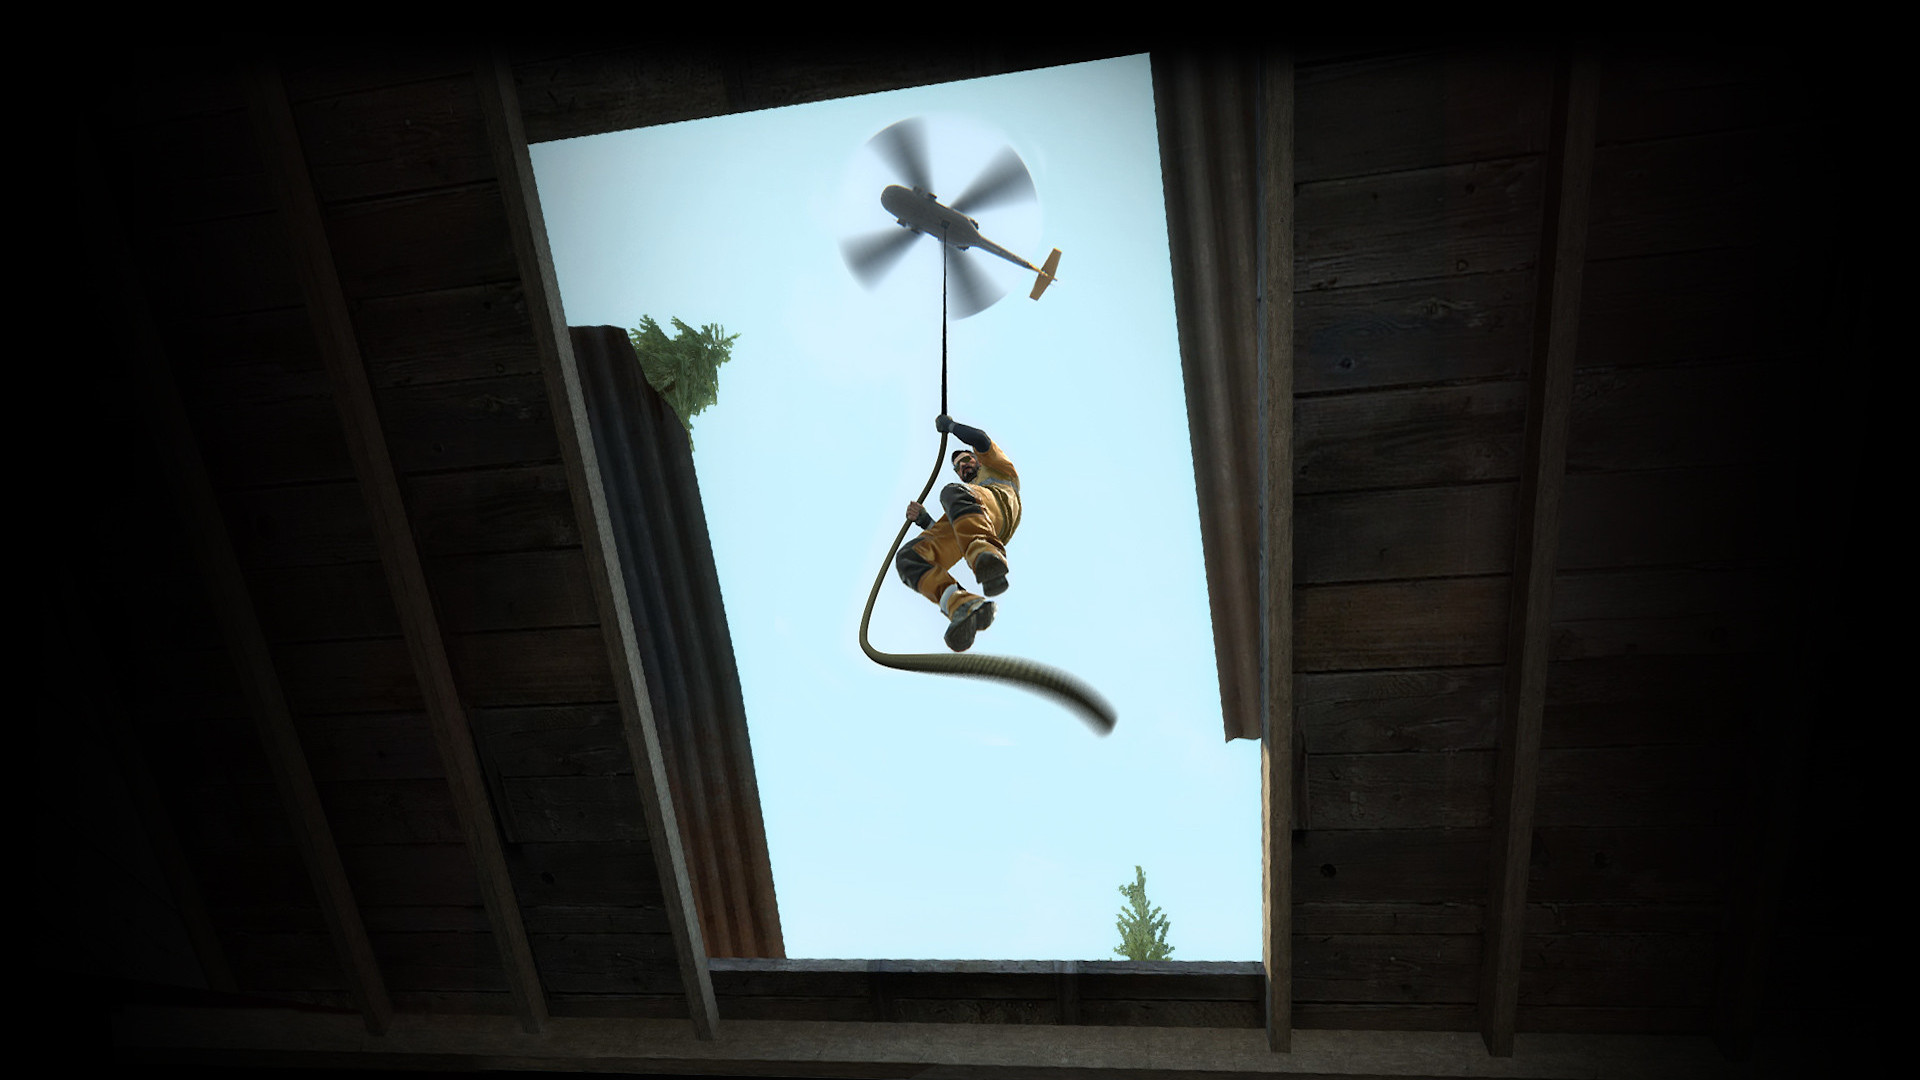 Trò chơi Battle Royale hay nhất: Một người đàn ông trong bộ jumpsuit màu cam hạ xuống một sợi dây từ một chiếc trực thăng trong CS: Gos Danger Zone